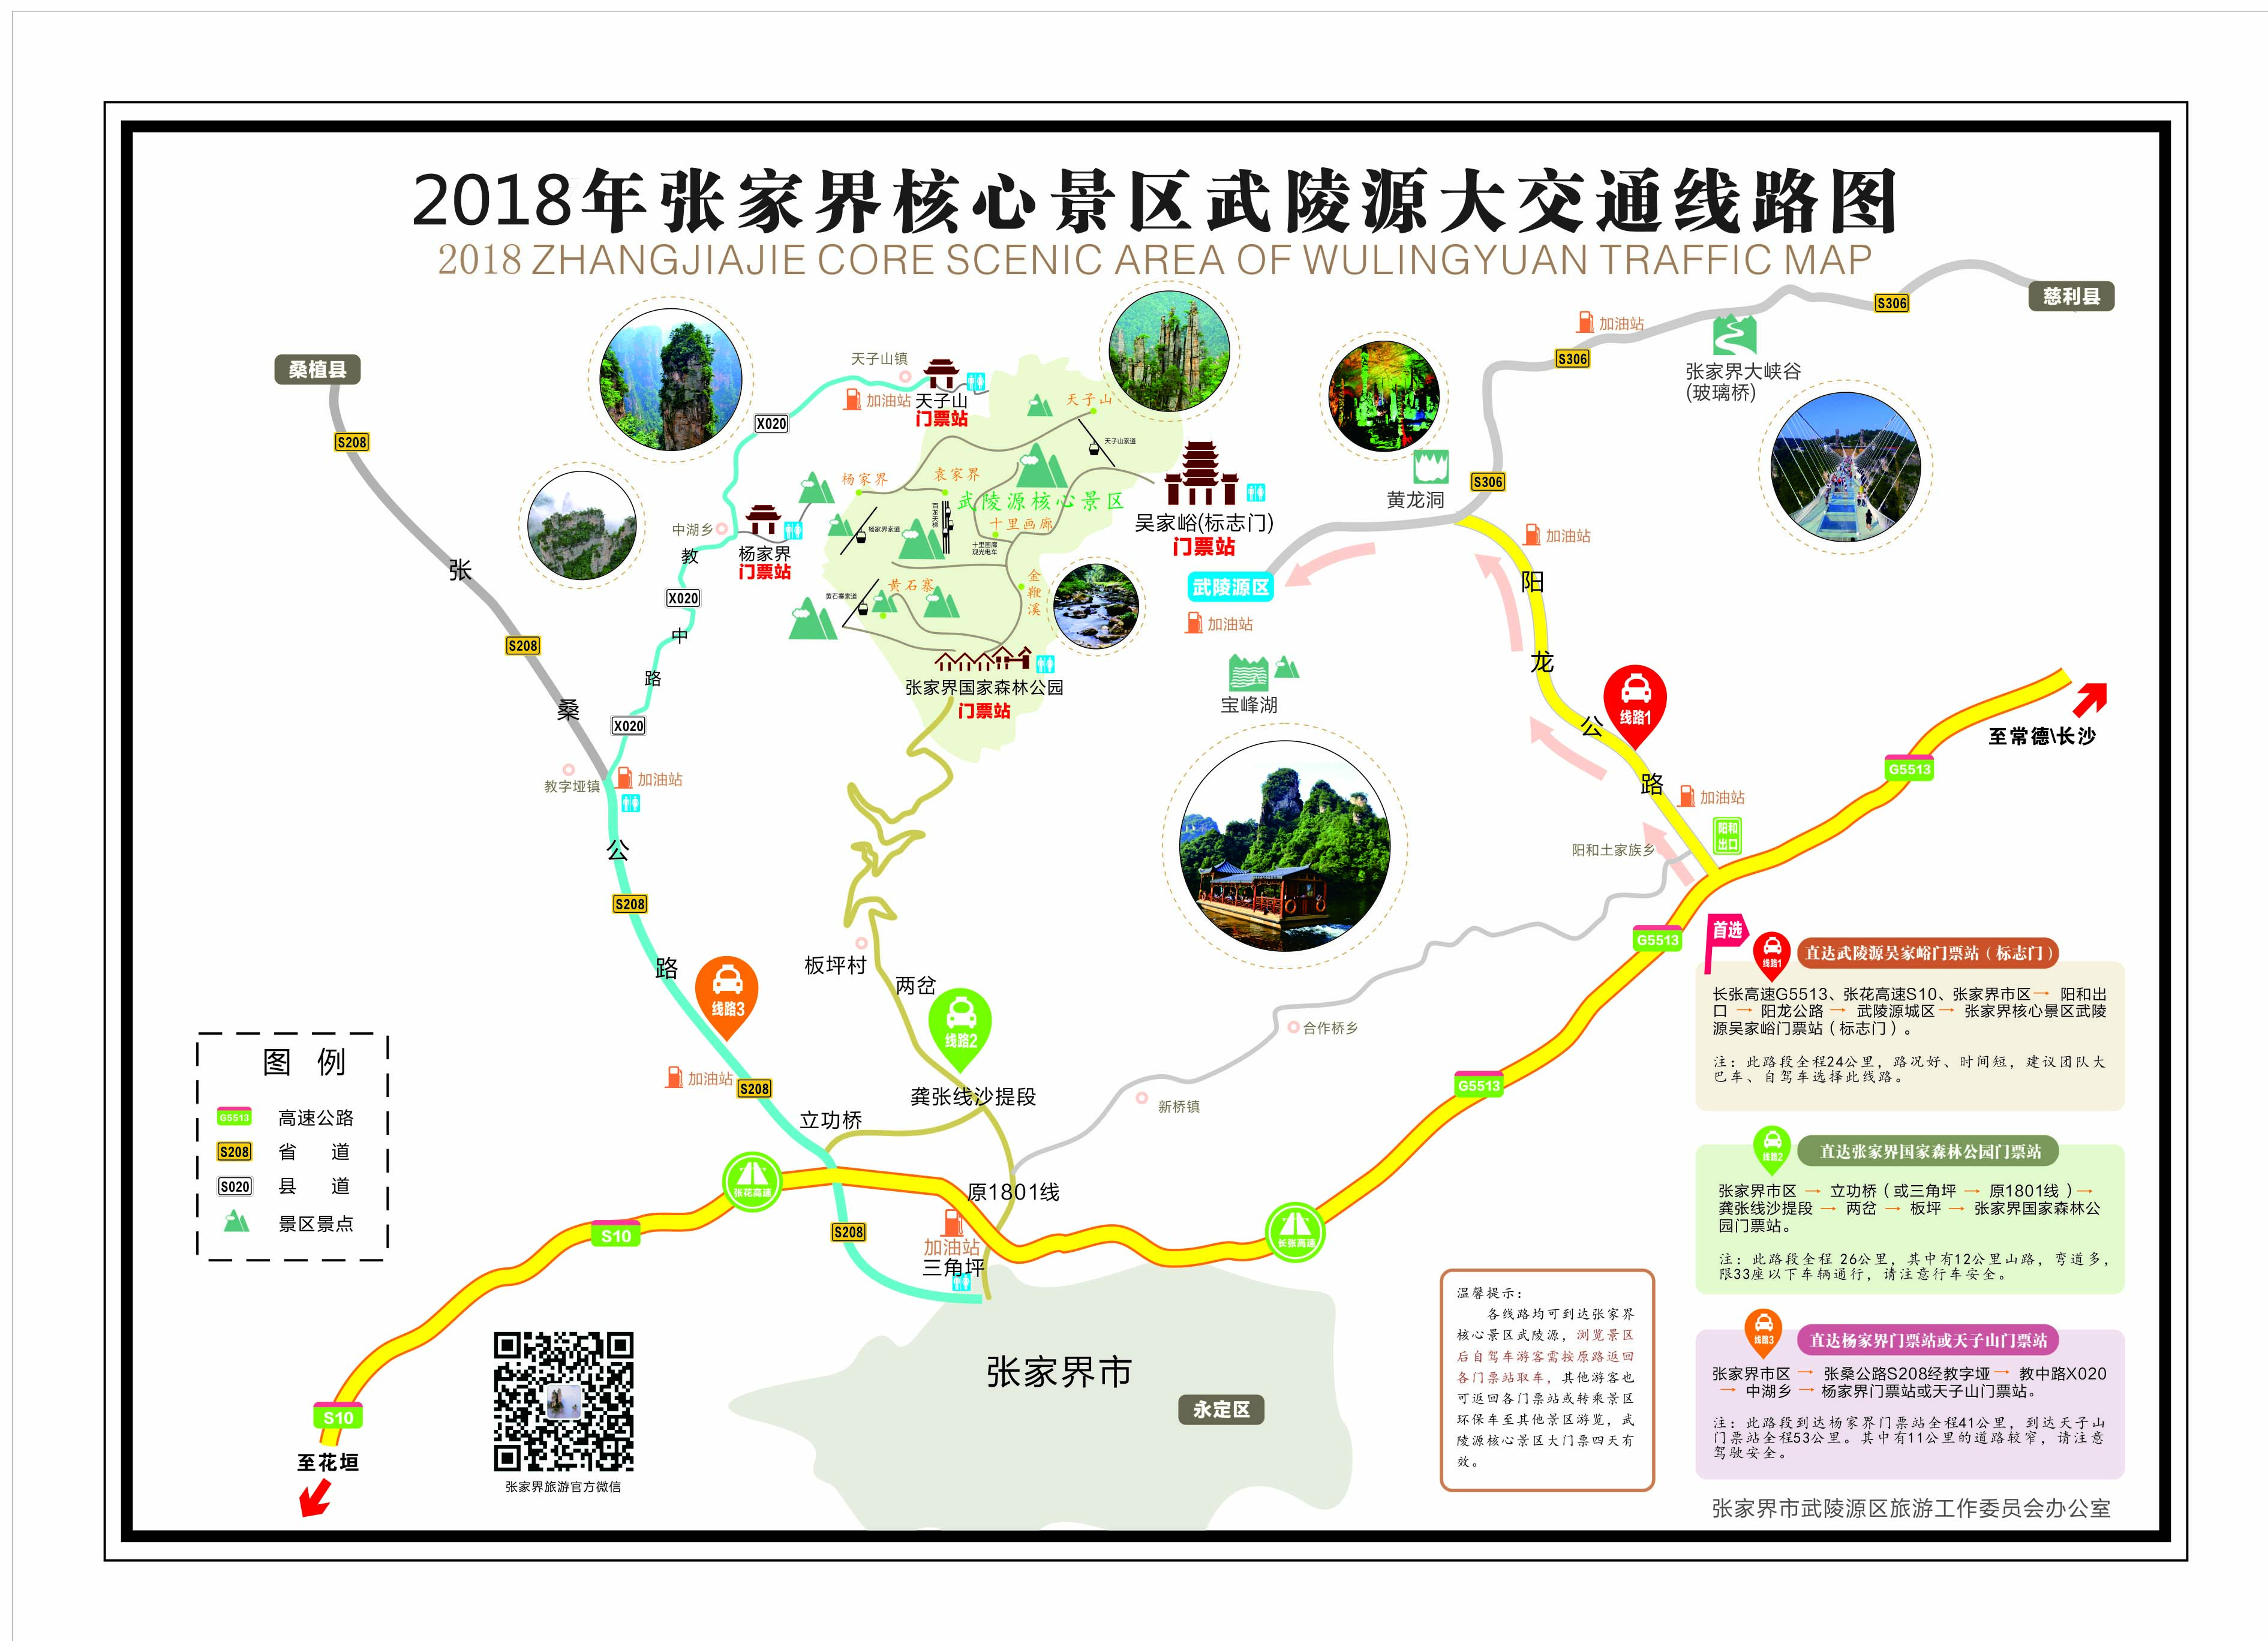 2018年張家界核心景區(qū)武陵源大交通線路圖